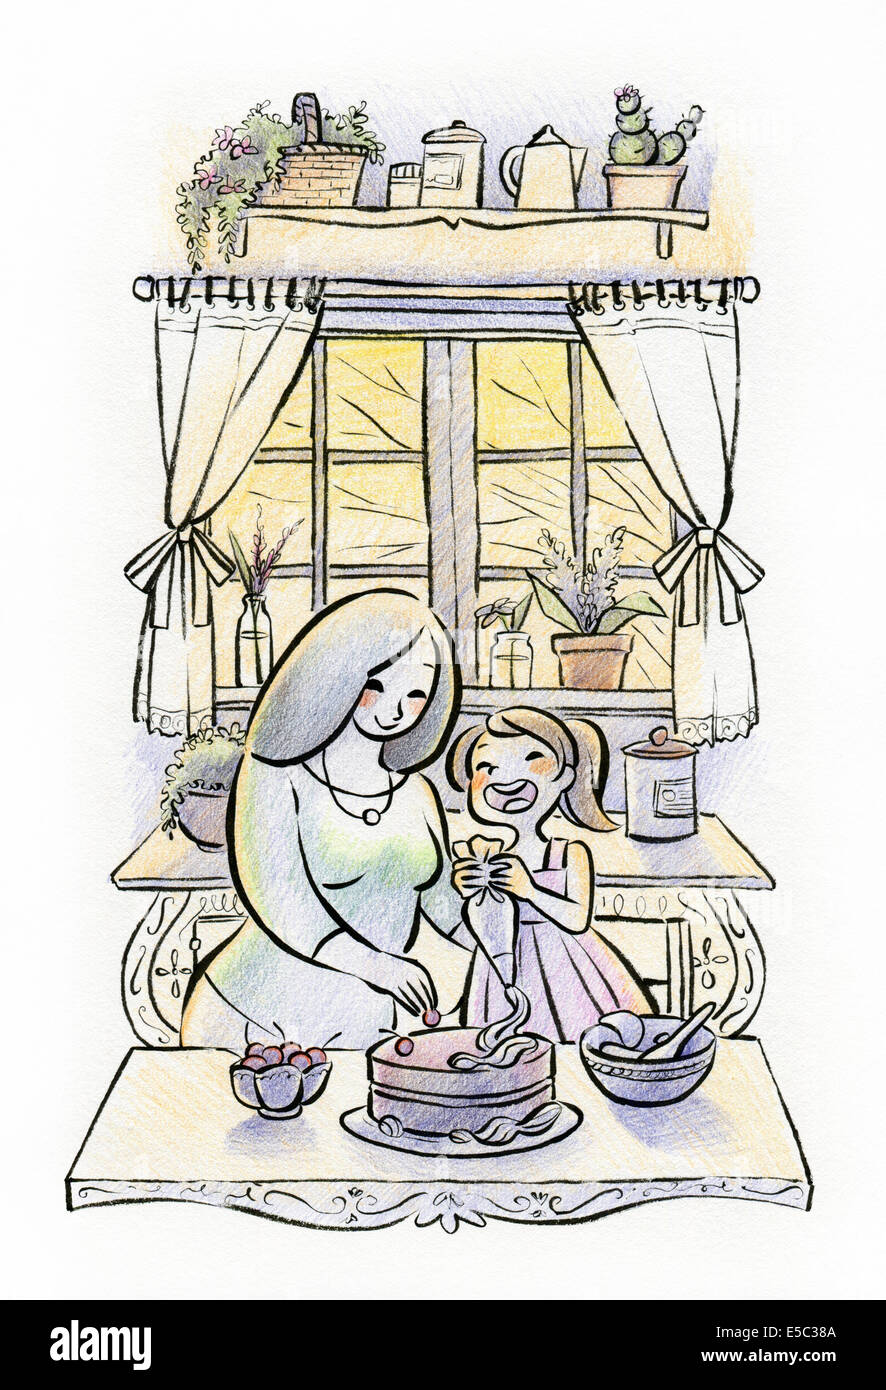 Illustration de mère et fille préparer cake together in kitchen Banque D'Images